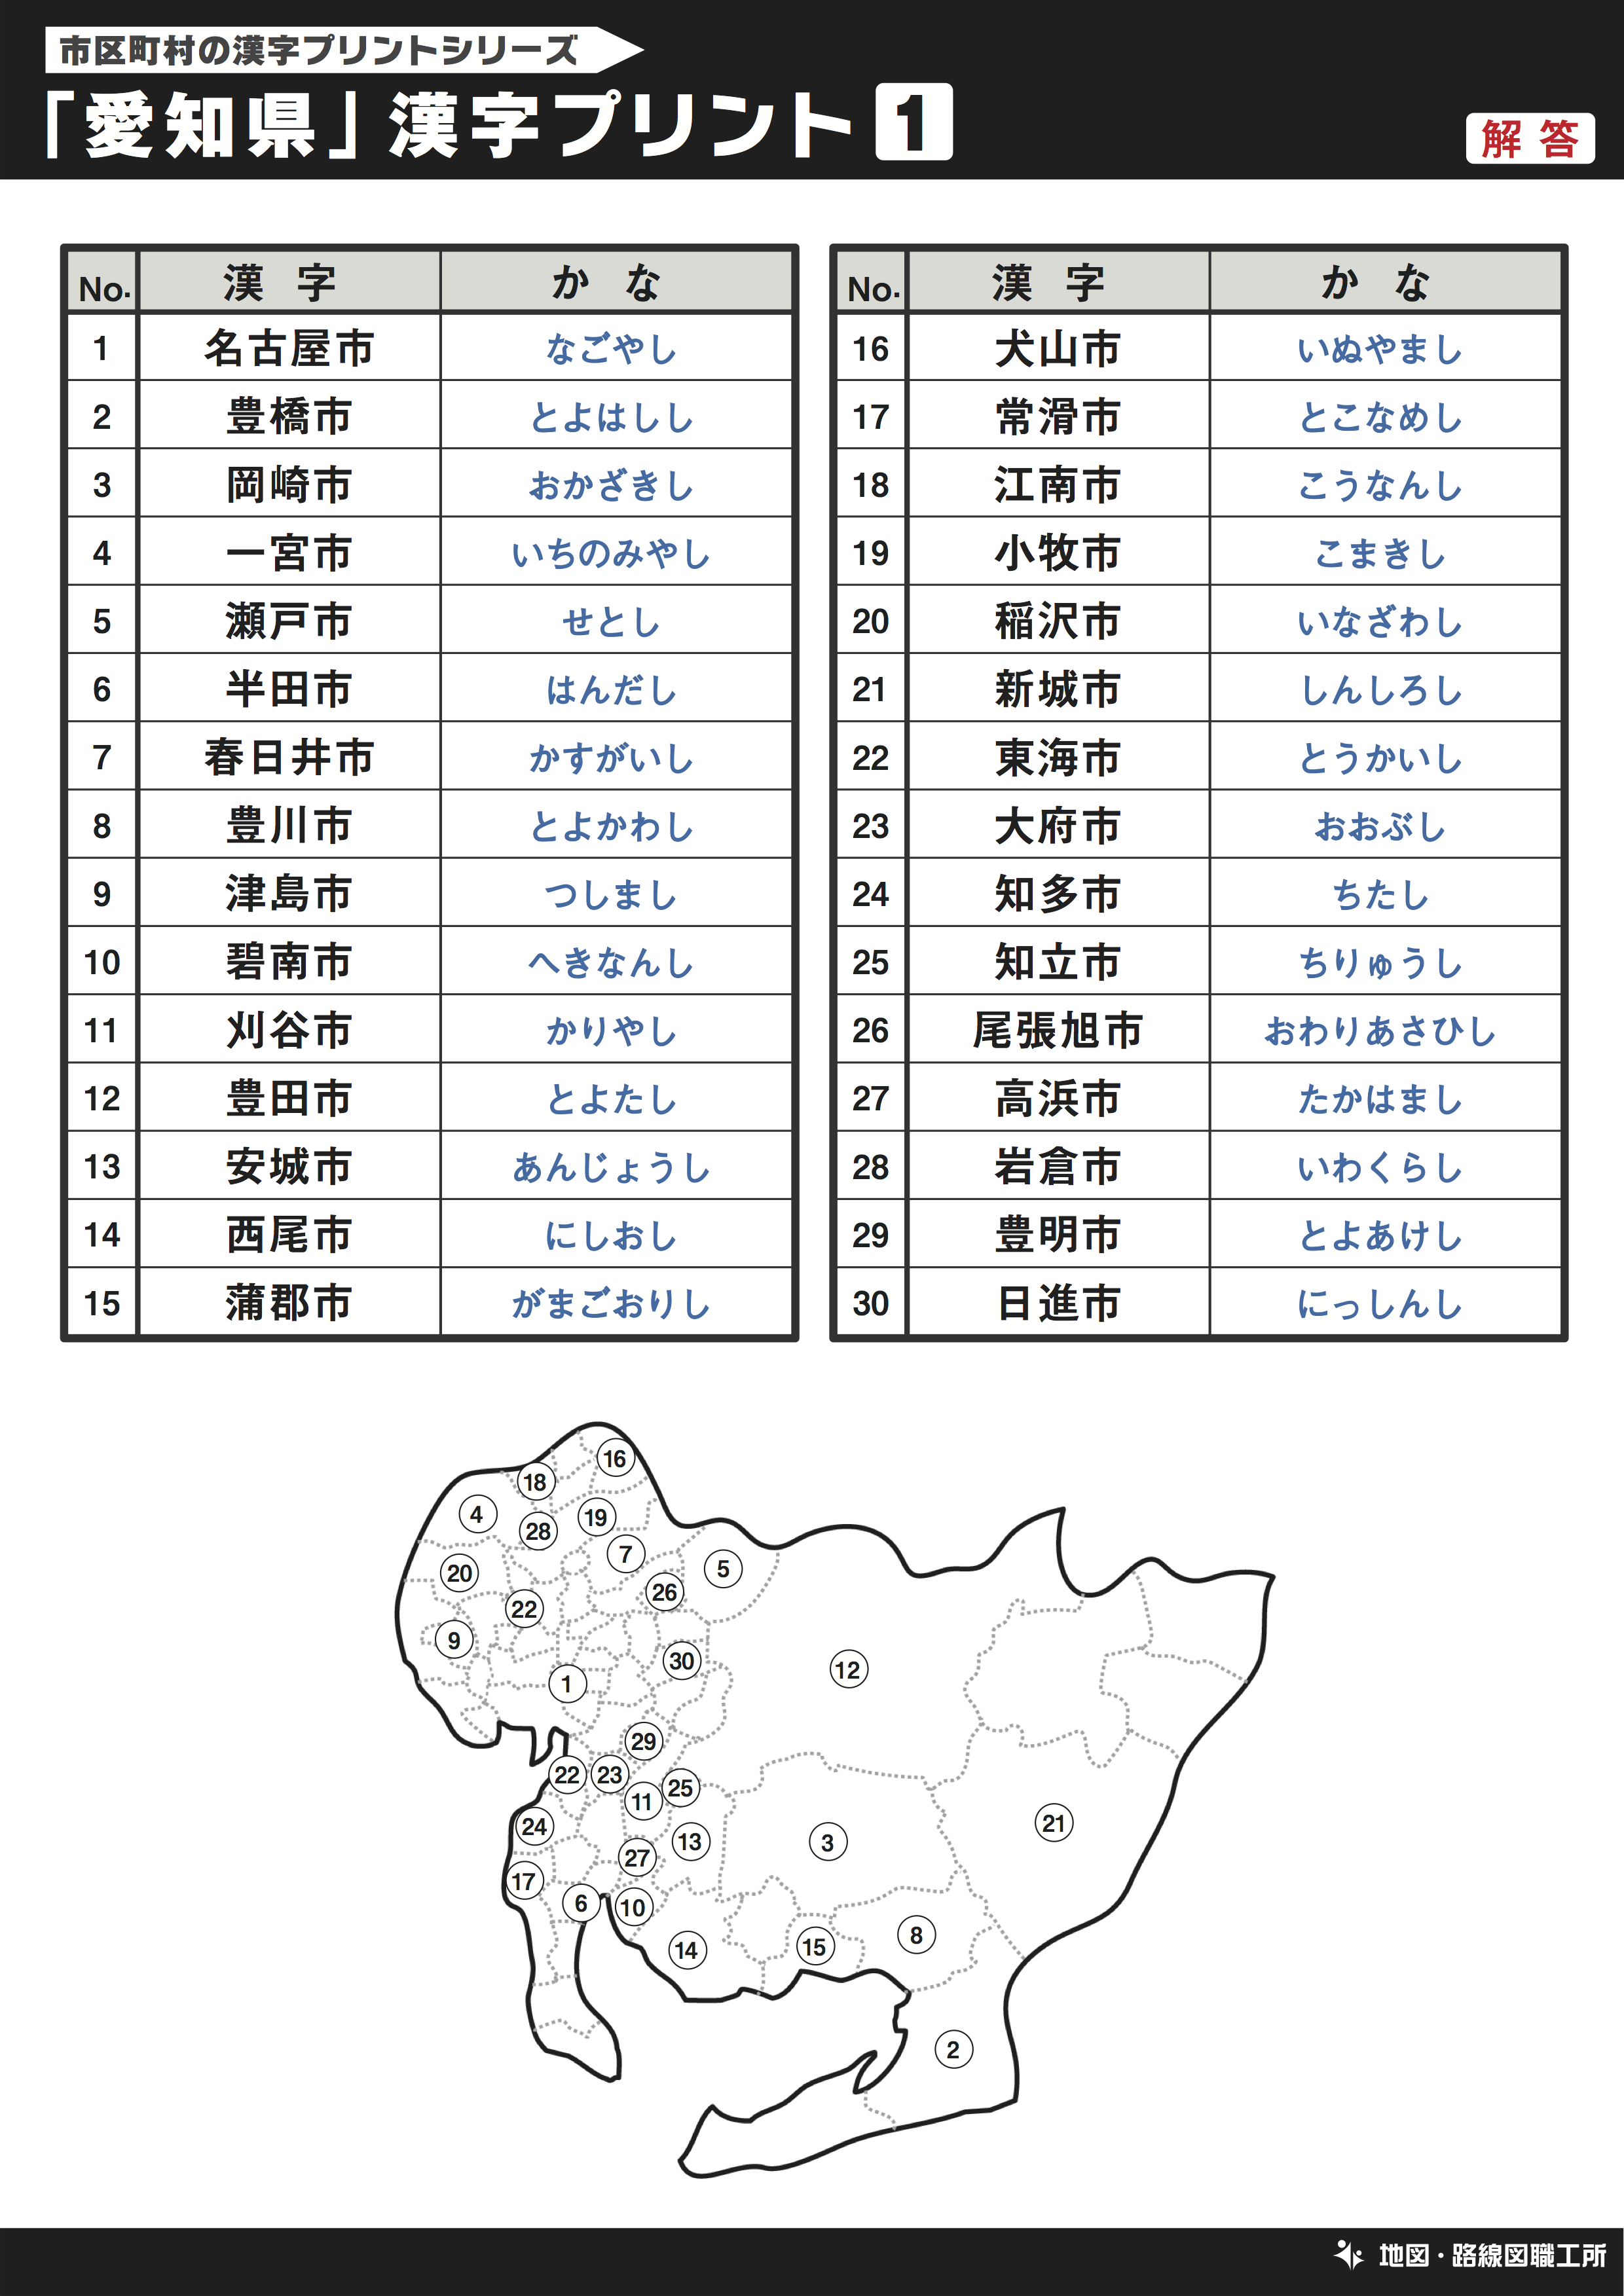 愛知県の市町村一覧をダウンロード 地方公共団体コード よみ